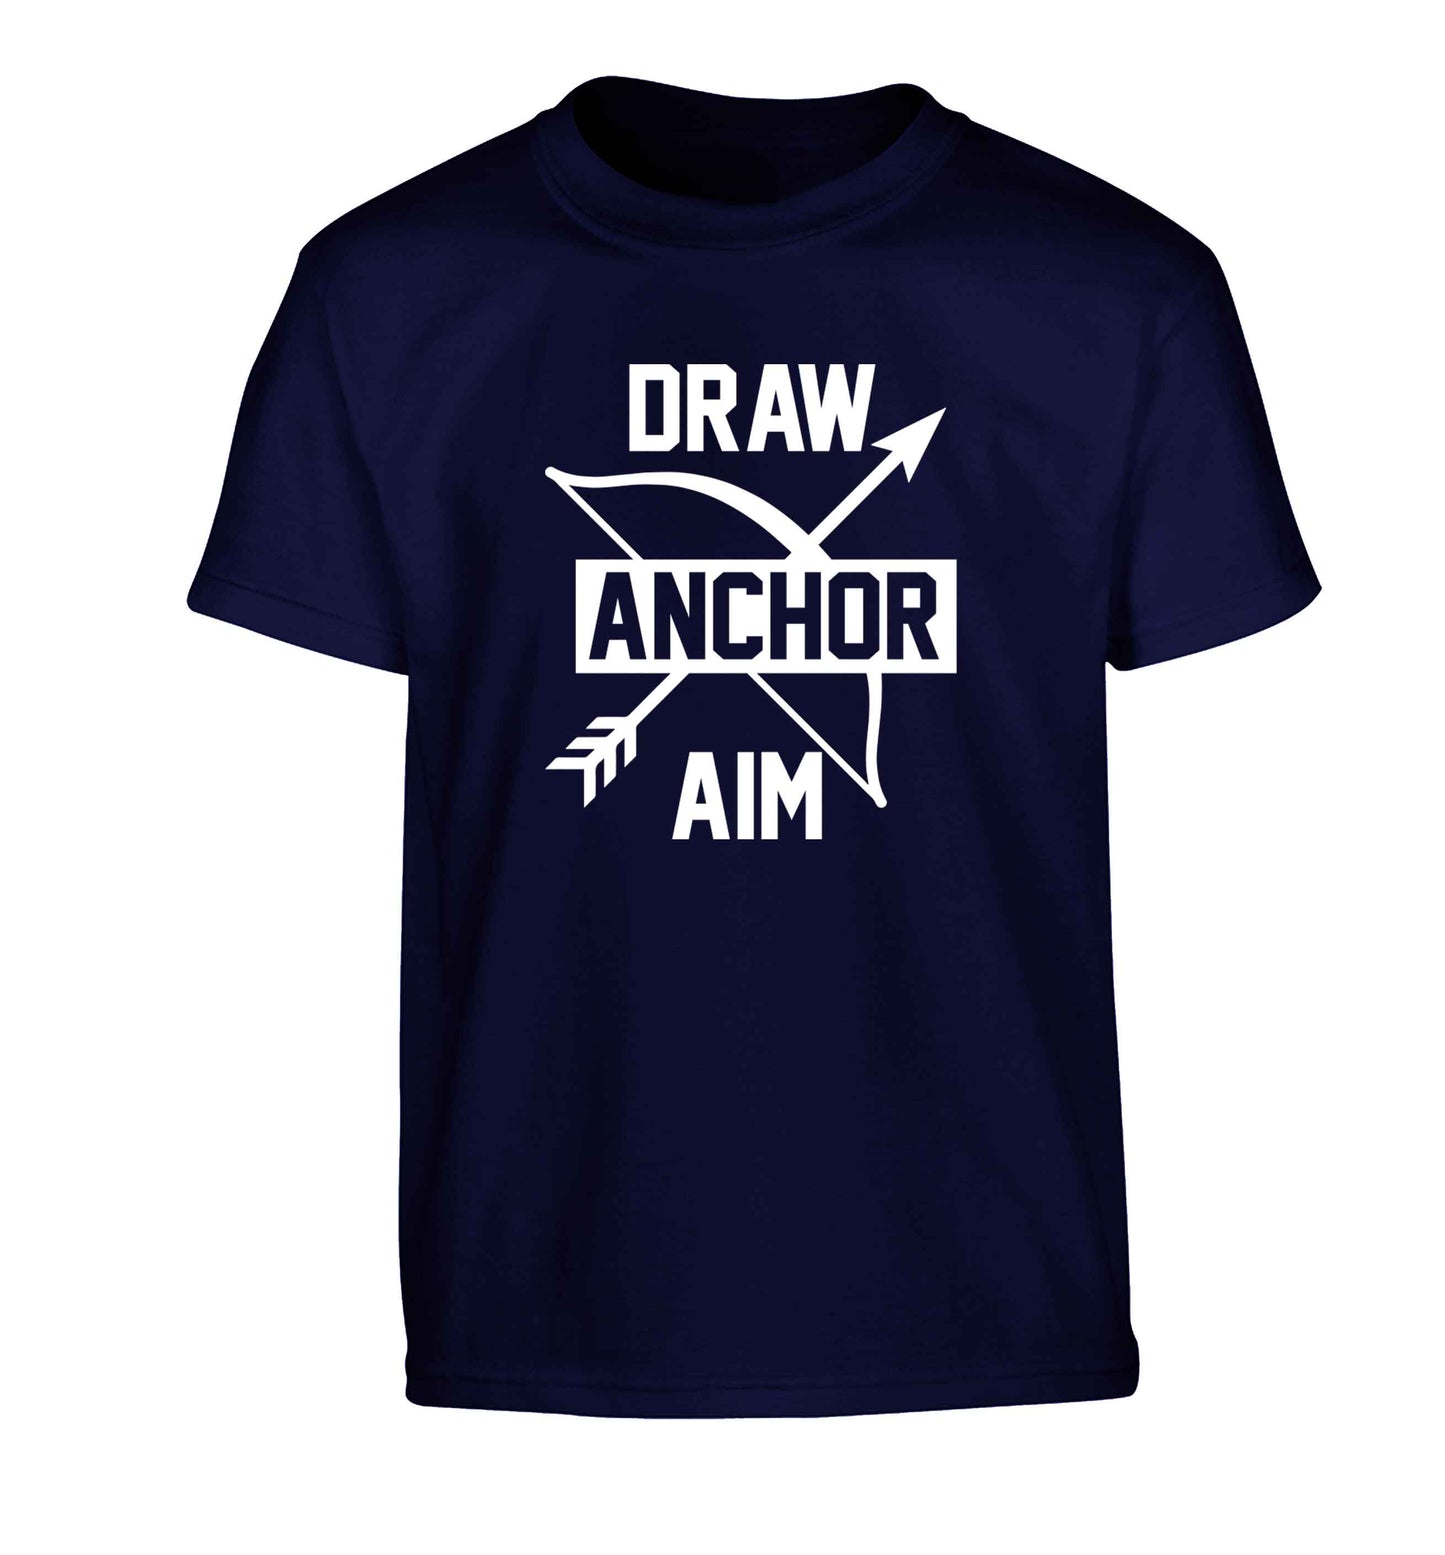 Draw anchor aim Children's navy Tshirt 12-13 Years